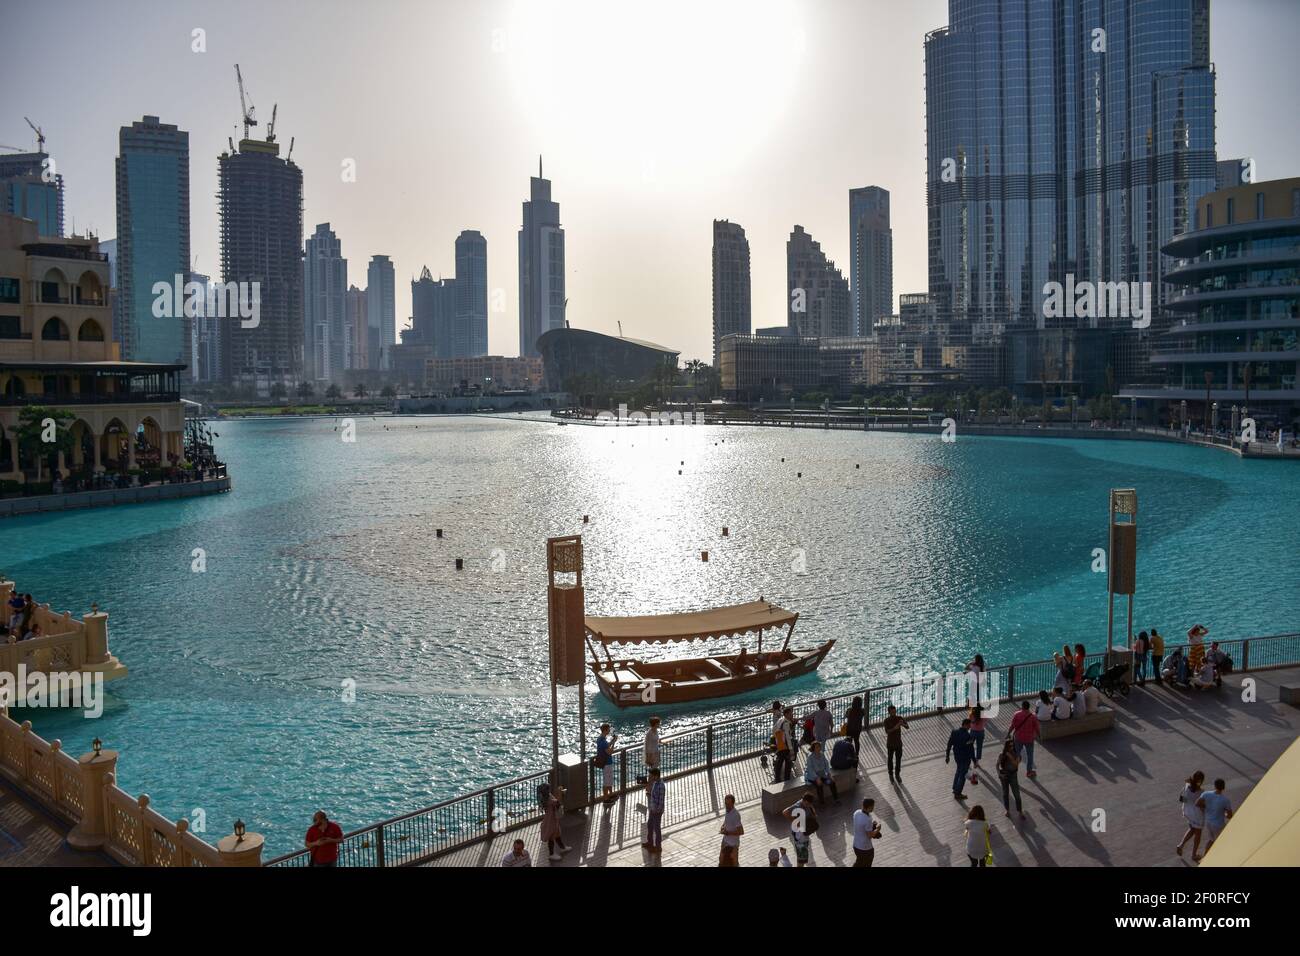 Eine Menge Touristen in der Nähe des Dubai Mall Springbrunnens am Tag Stockfoto